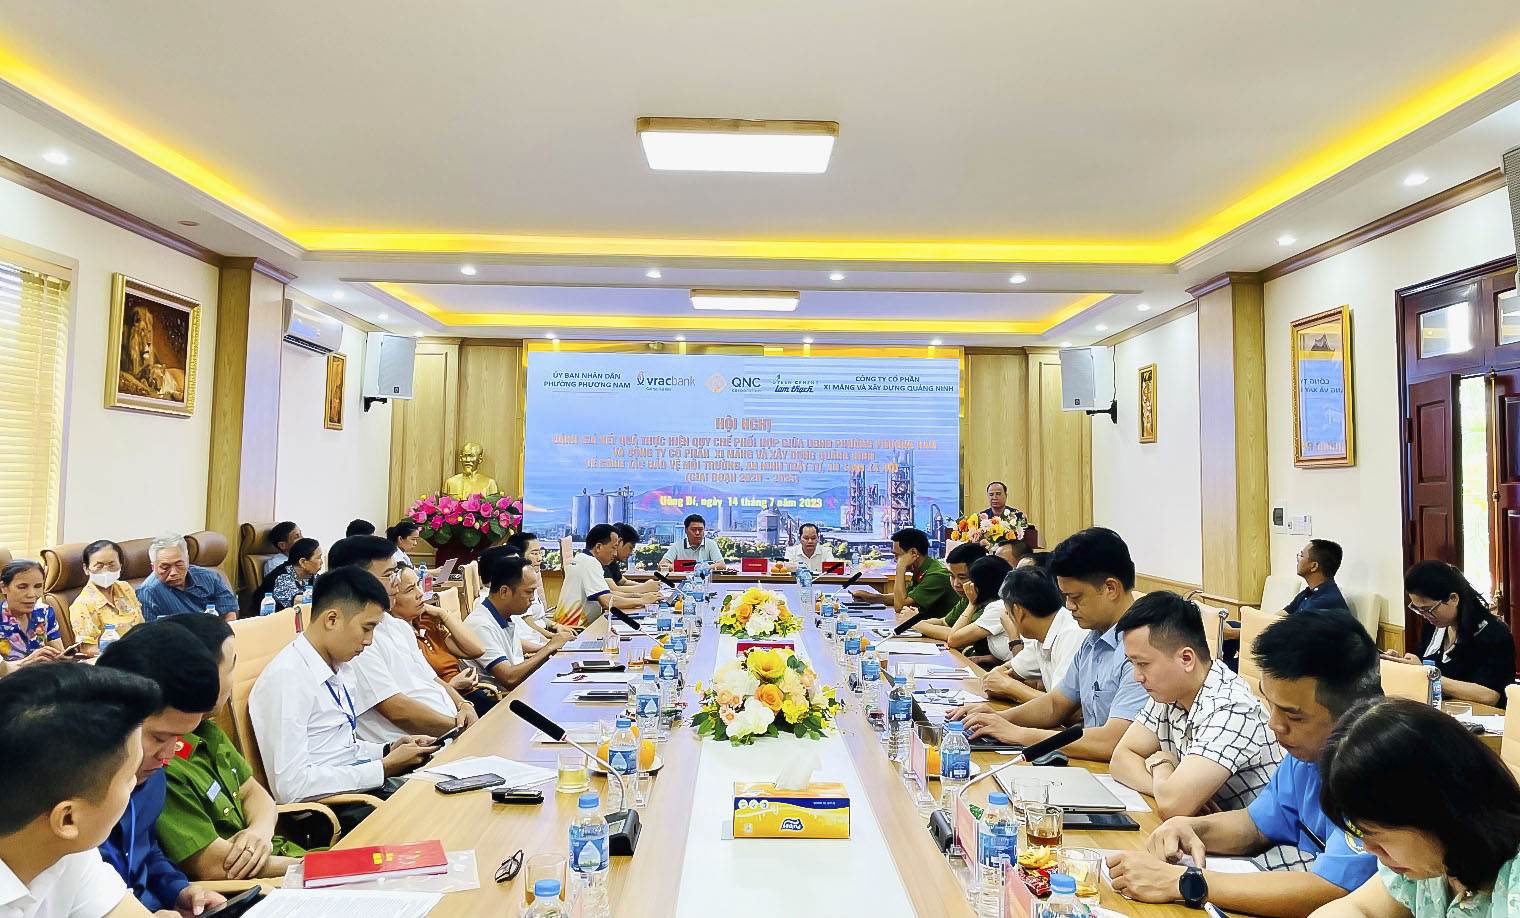 Hội nghị đánh giá kết quả thực hiện Quy chế phối hợp giữa UBND phường Phương Nam và Công ty Cổ phần Xi măng và Xây dựng Quảng Ninh về công tác Bảo vệ môi trường, An ninh trật tự và An sinh xã hội (giai đoạn 2020 - 2023).